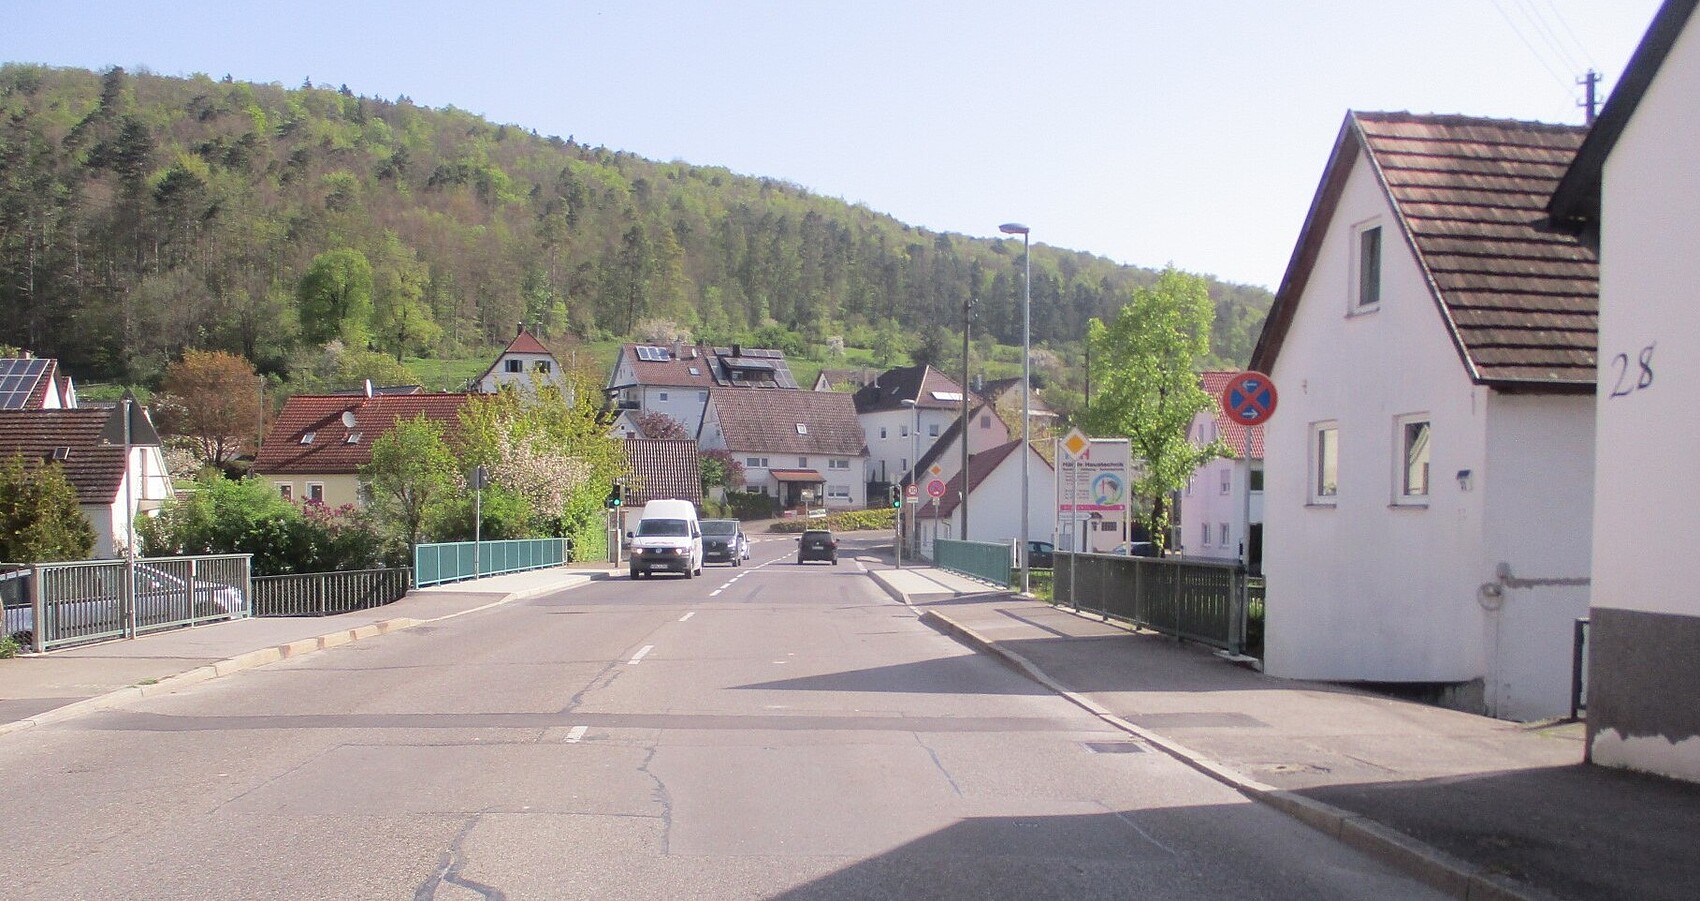 Das Foto zeigt die Brücke über den Neumühlkanal in Blaubeuren-Gerhausen. Mehrere Wohnhäuser und im Hintergrund ein Wald.